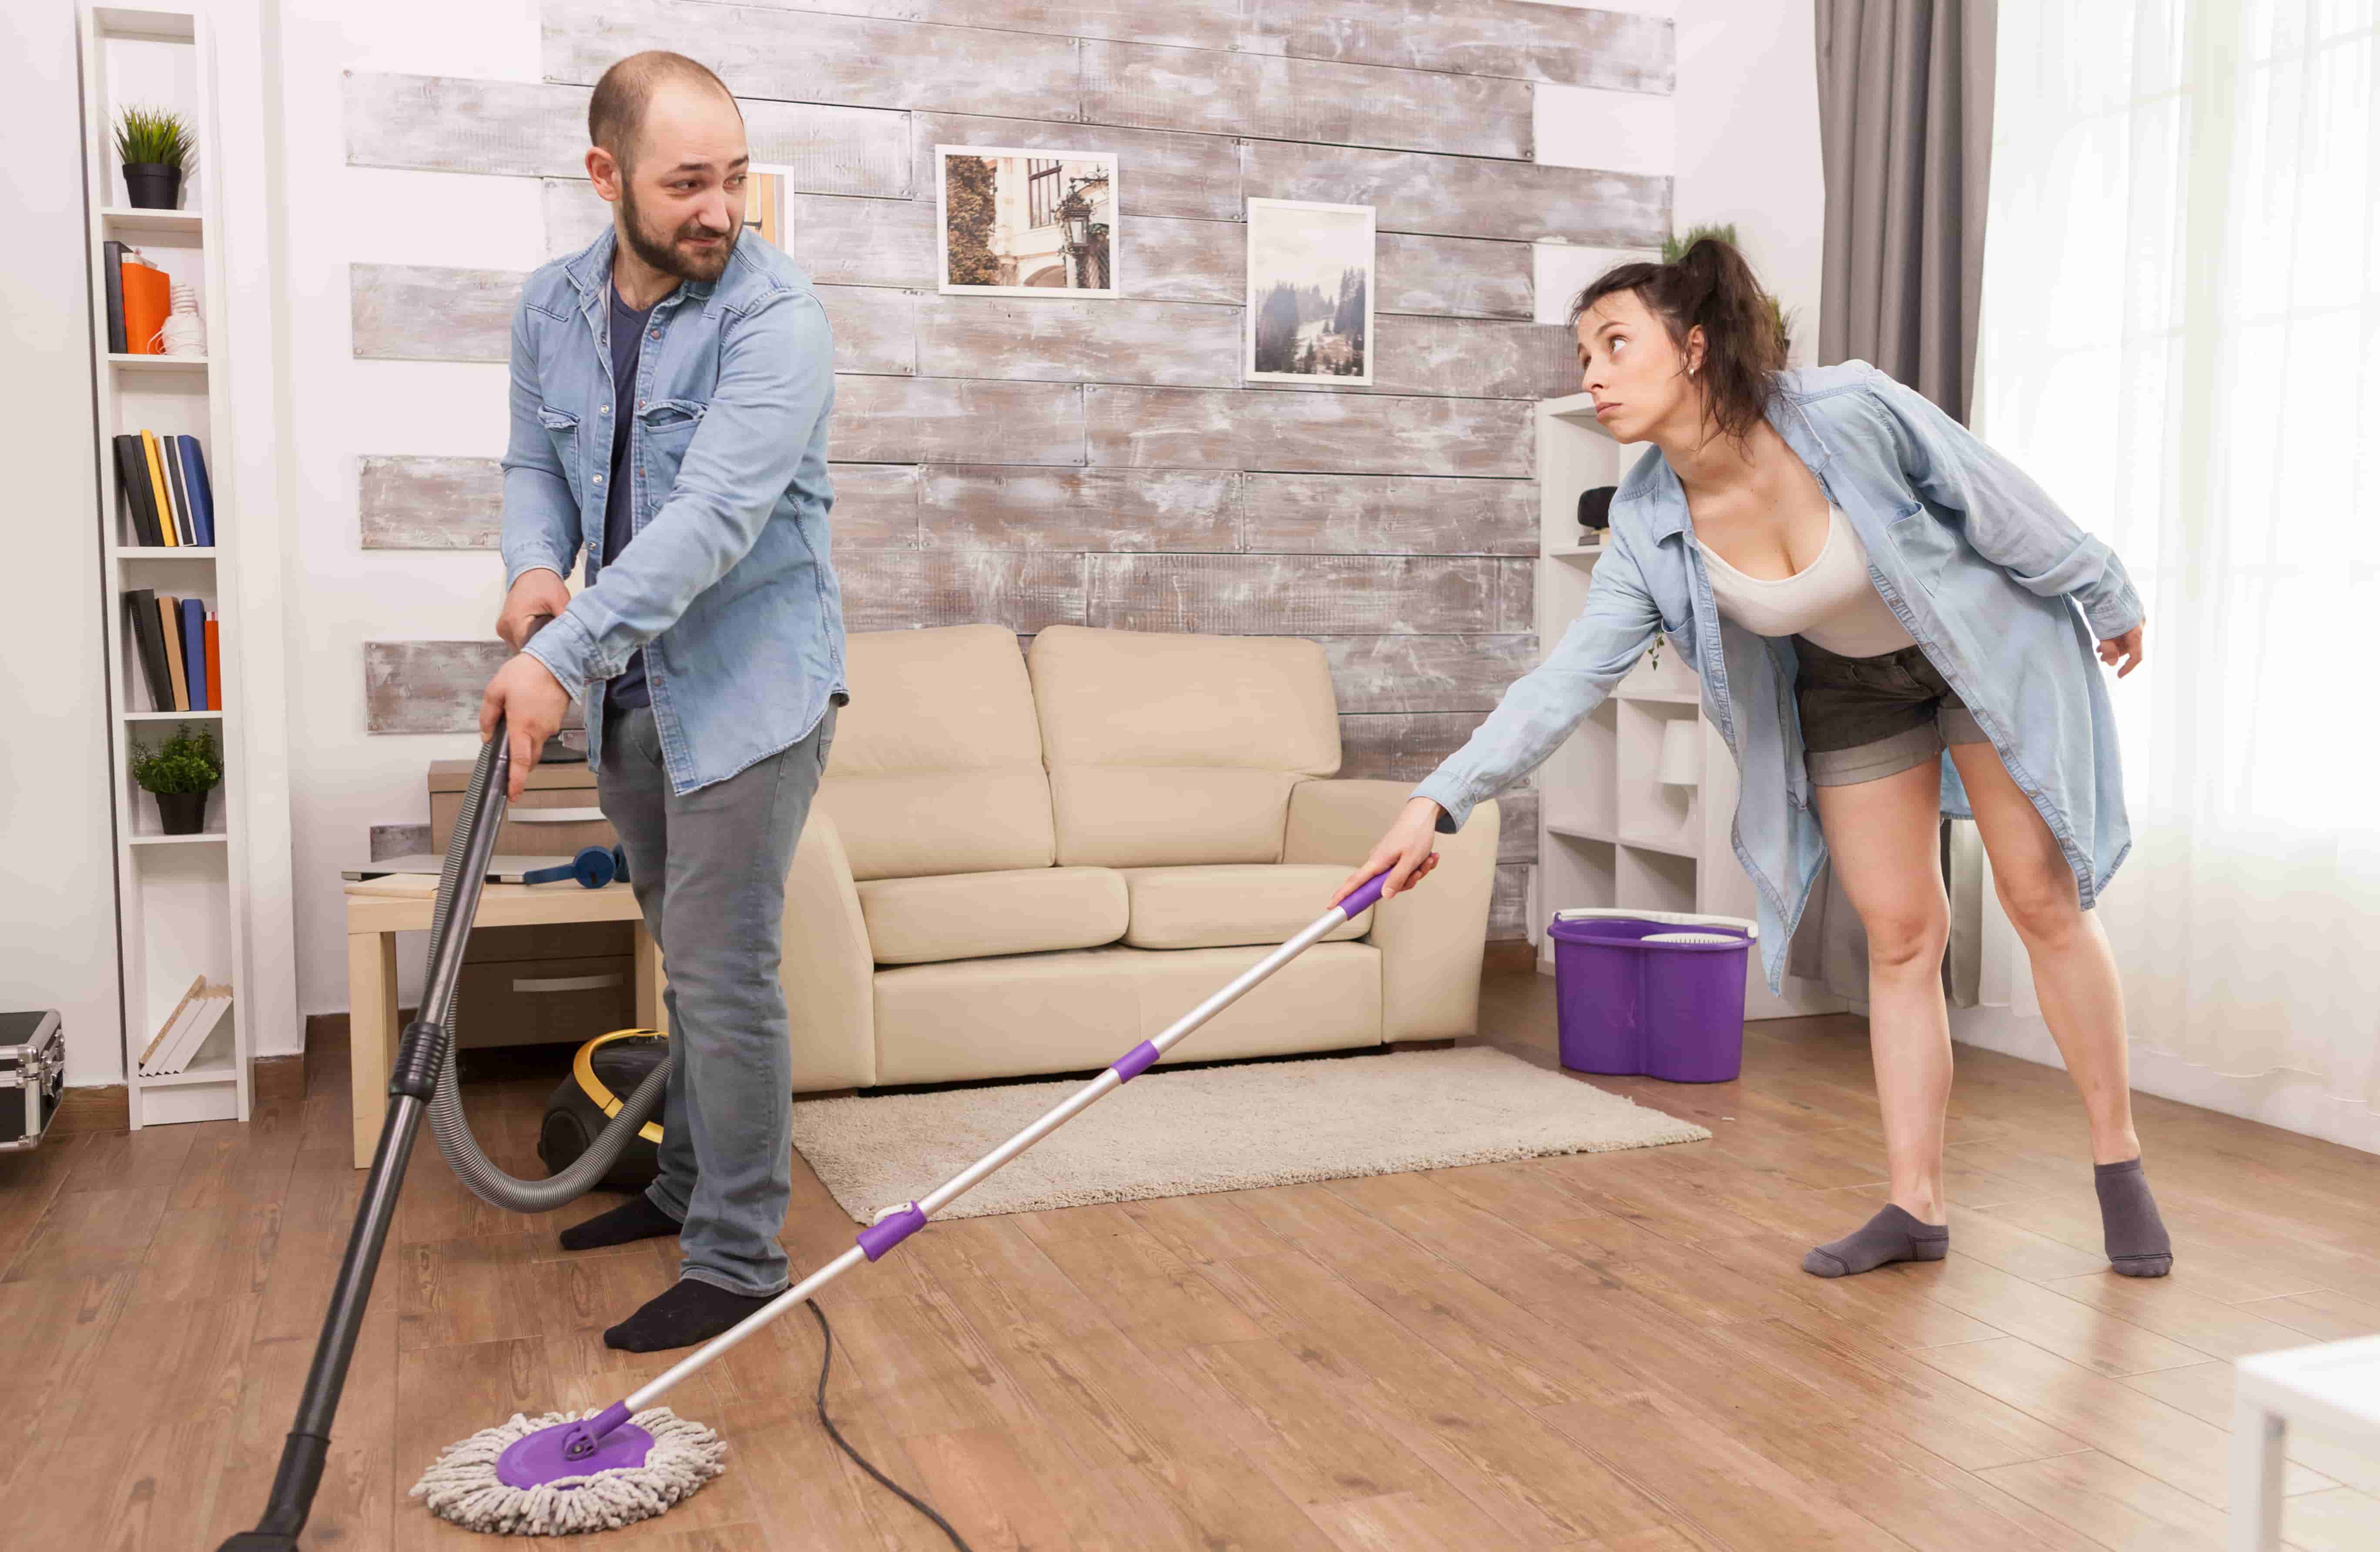 Что должен делать мужчина приходя домой? должен ли мужчина делать работу по дому, помогать жене?